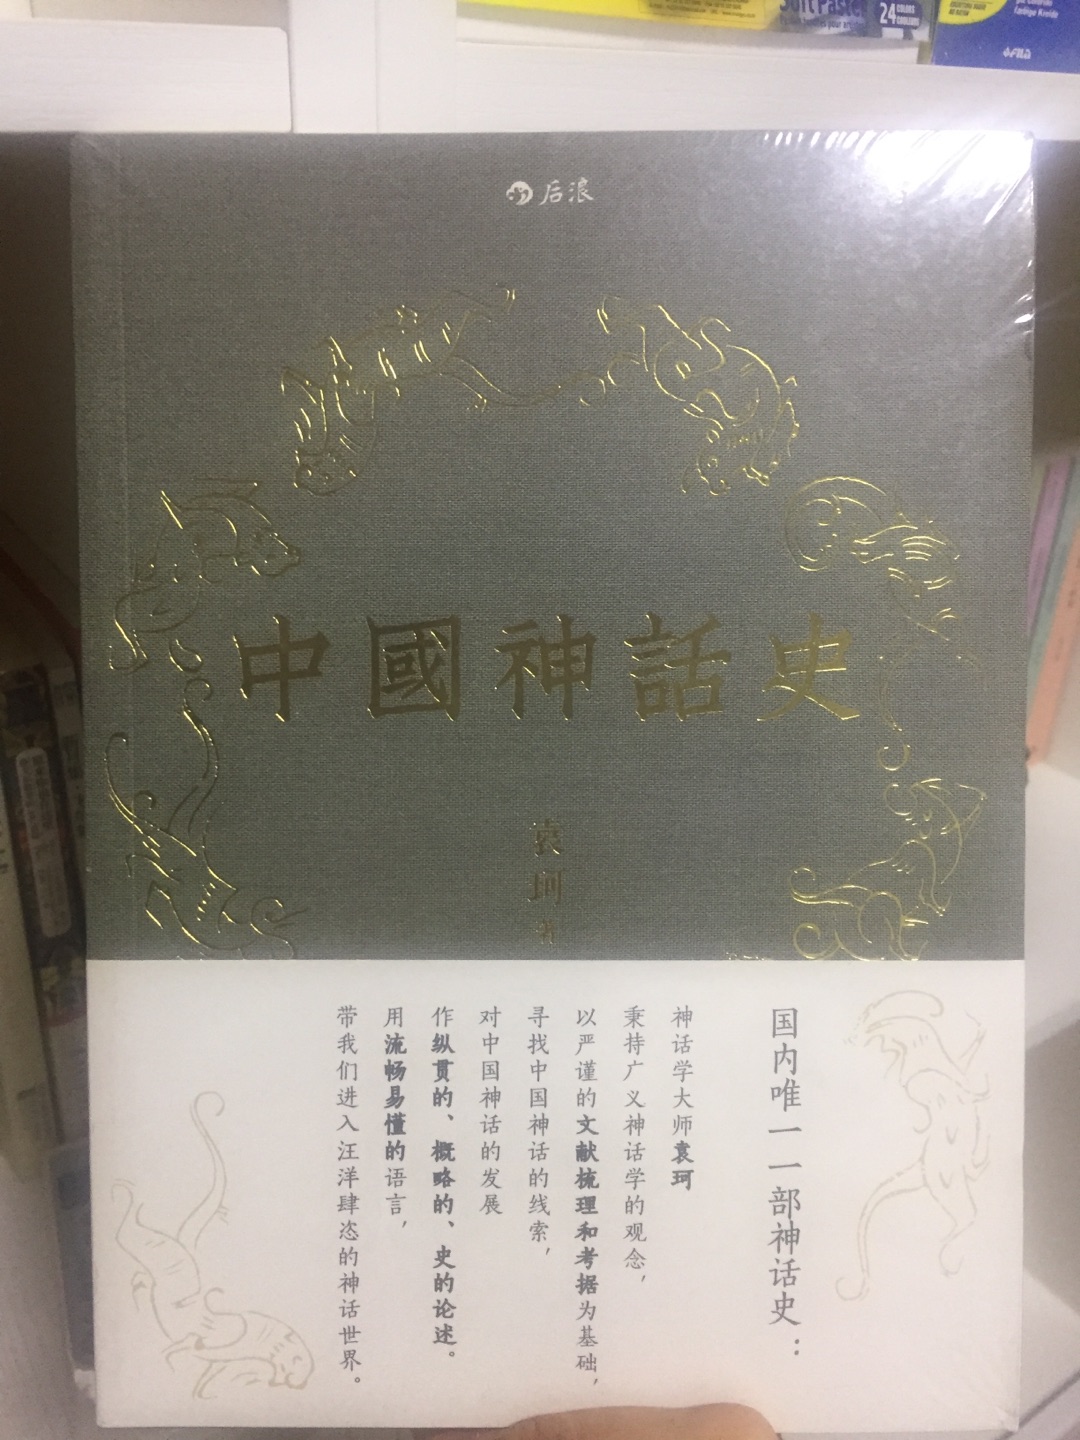 袁珂的书，了解中国神话的不二之选。顺便说一句，买书太赞了。